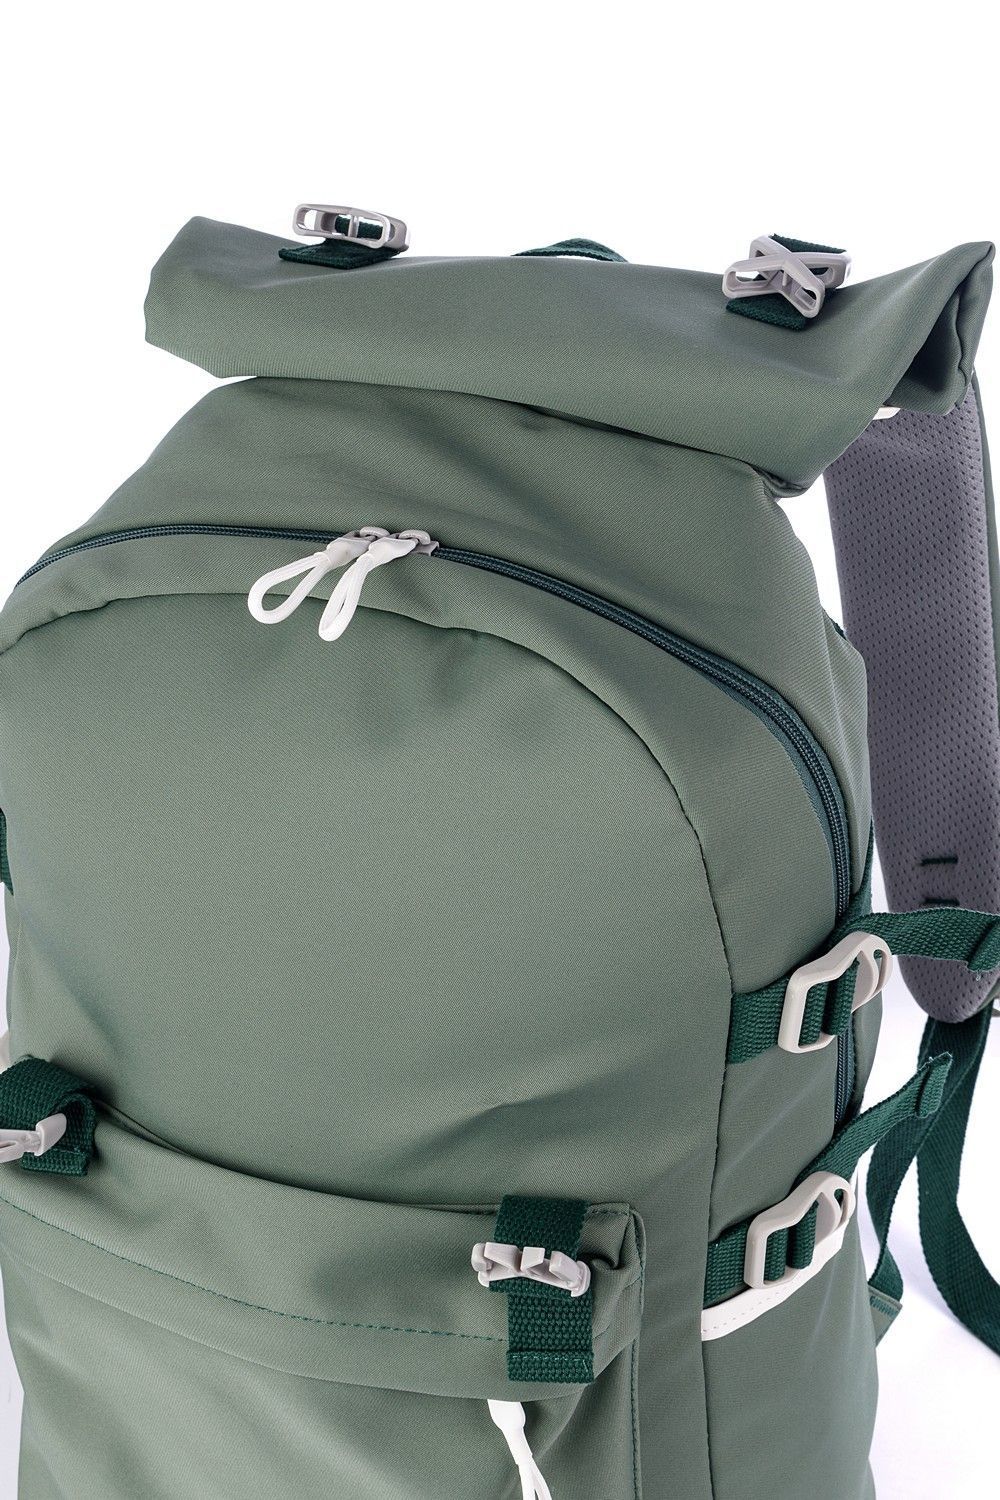 Рюкзак женский / мужской зеленый, однотонный, городской, с широкими лямками, 21л.